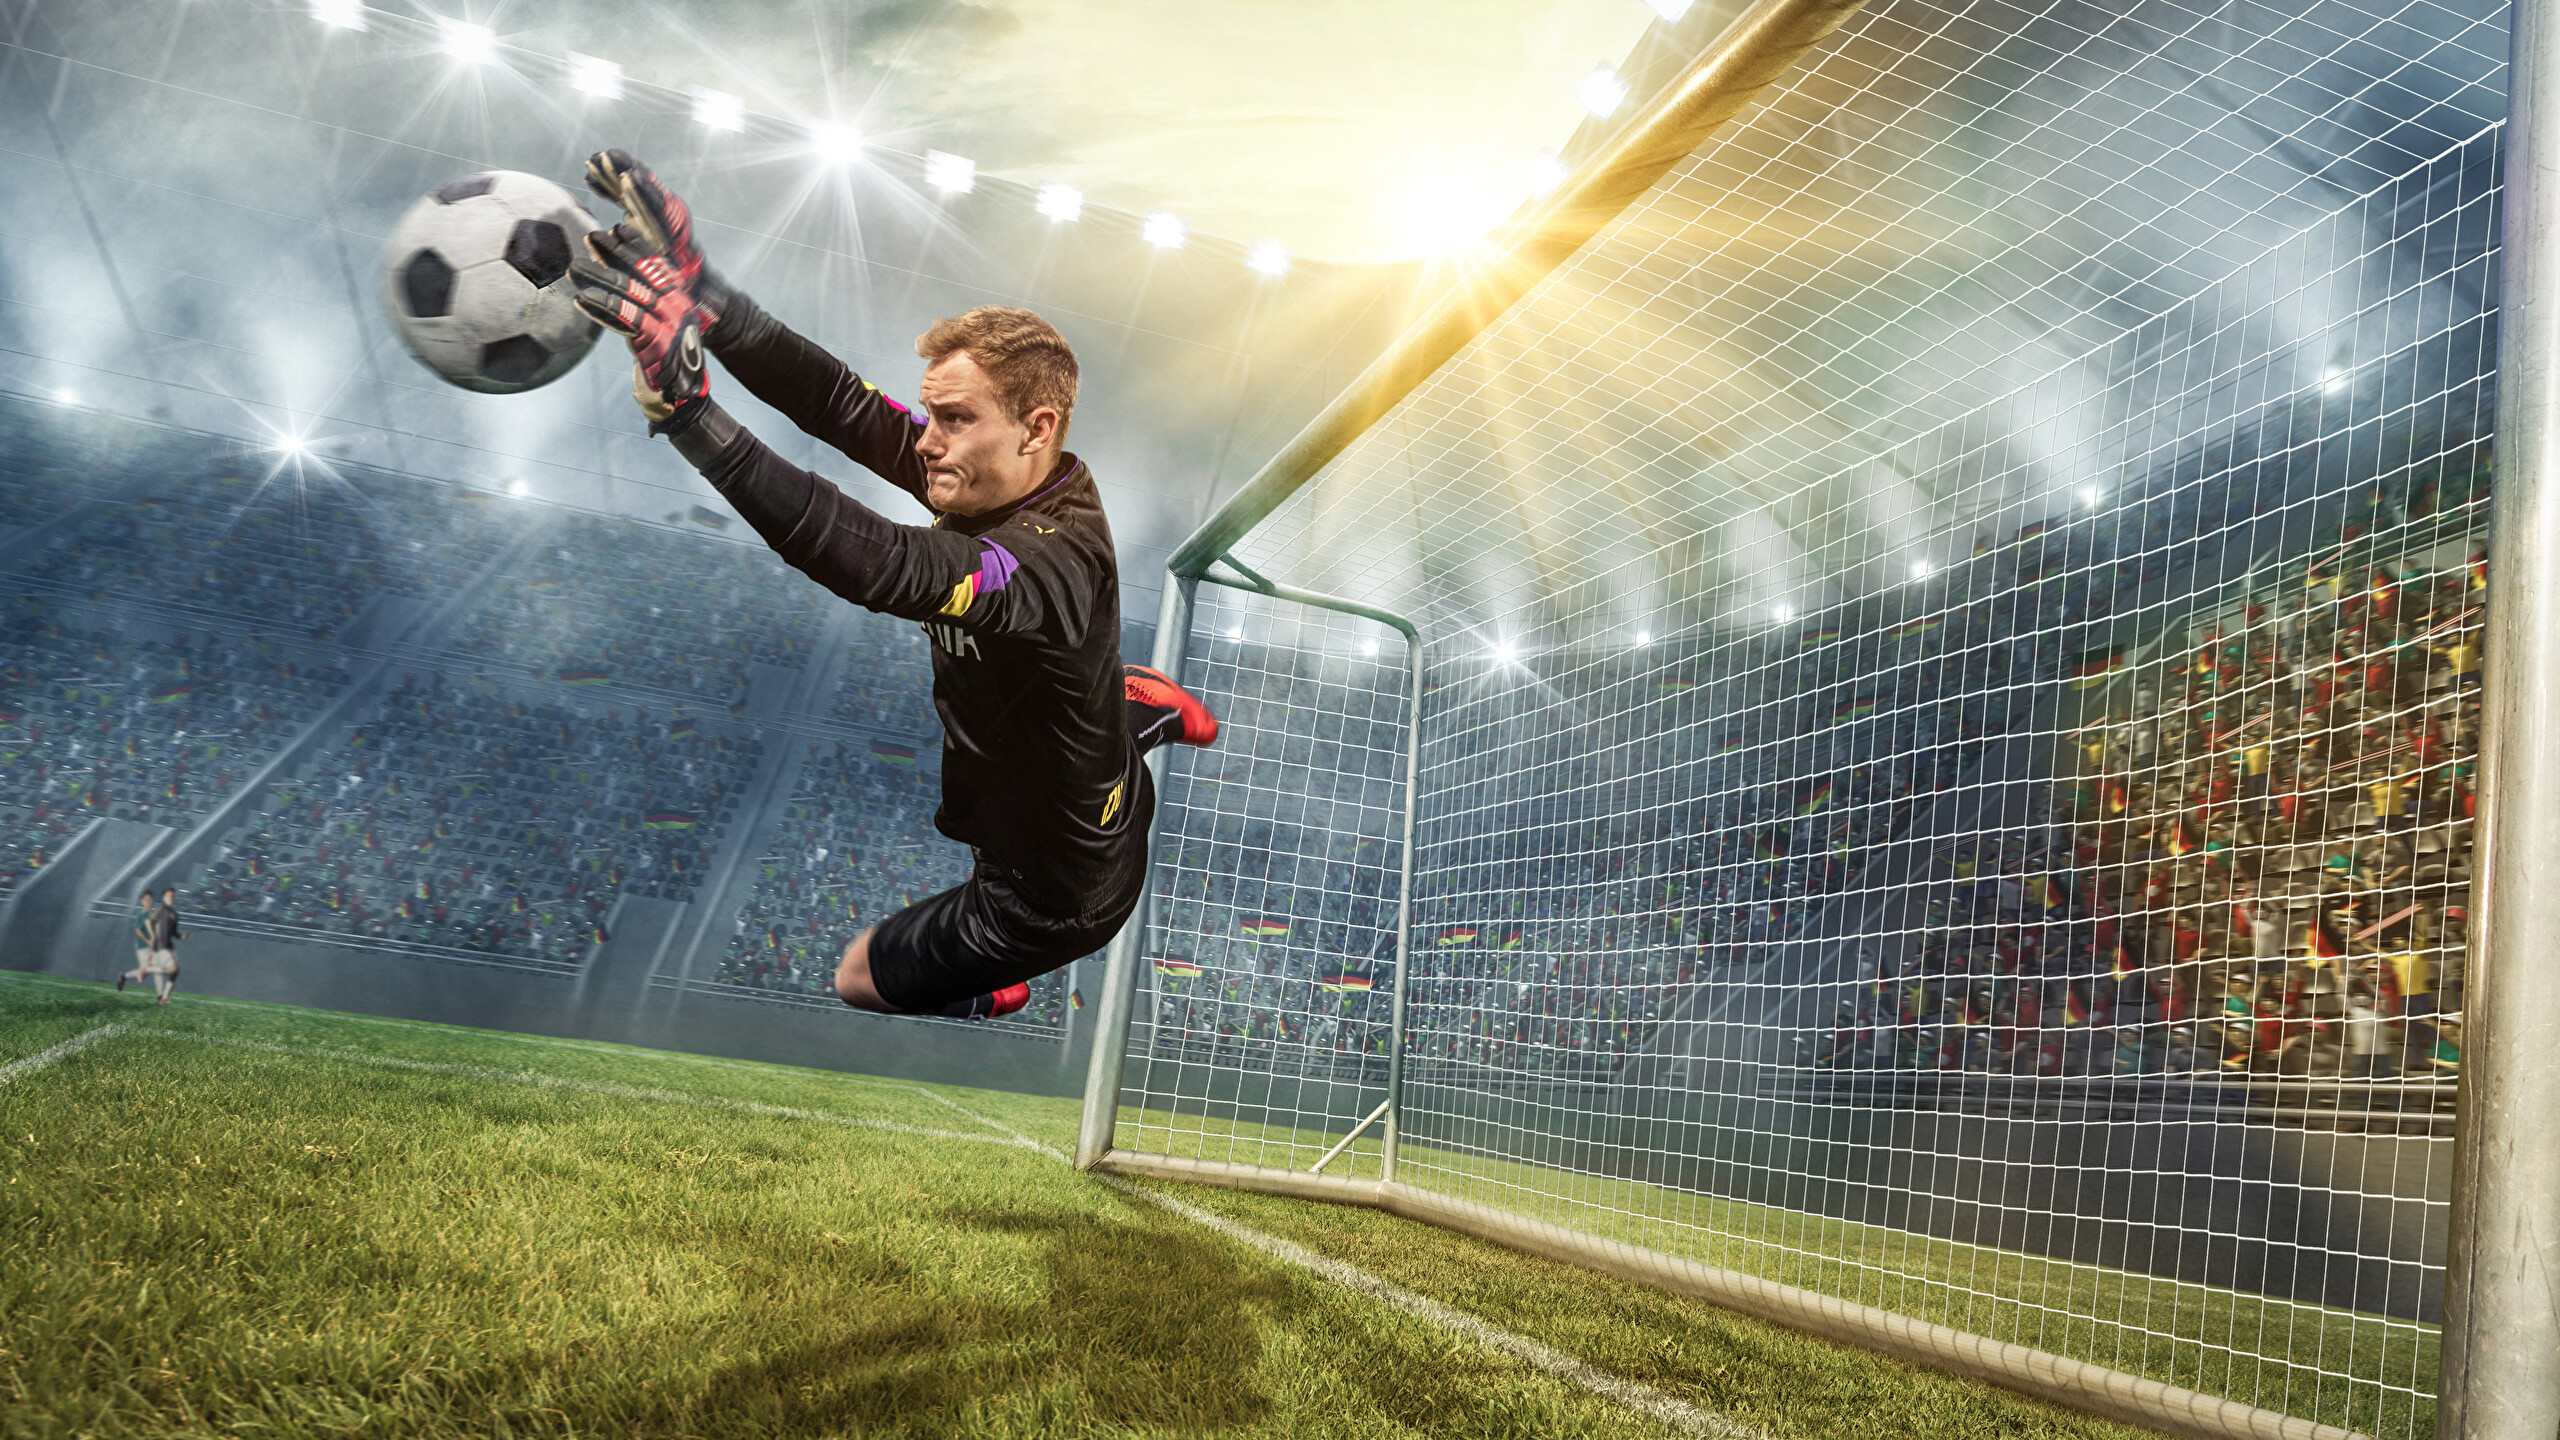 Goal (Sports): Goalkeeper catching the ball, Basic ball handling, Goalposts, Playing sports. 2560x1440 HD Wallpaper.